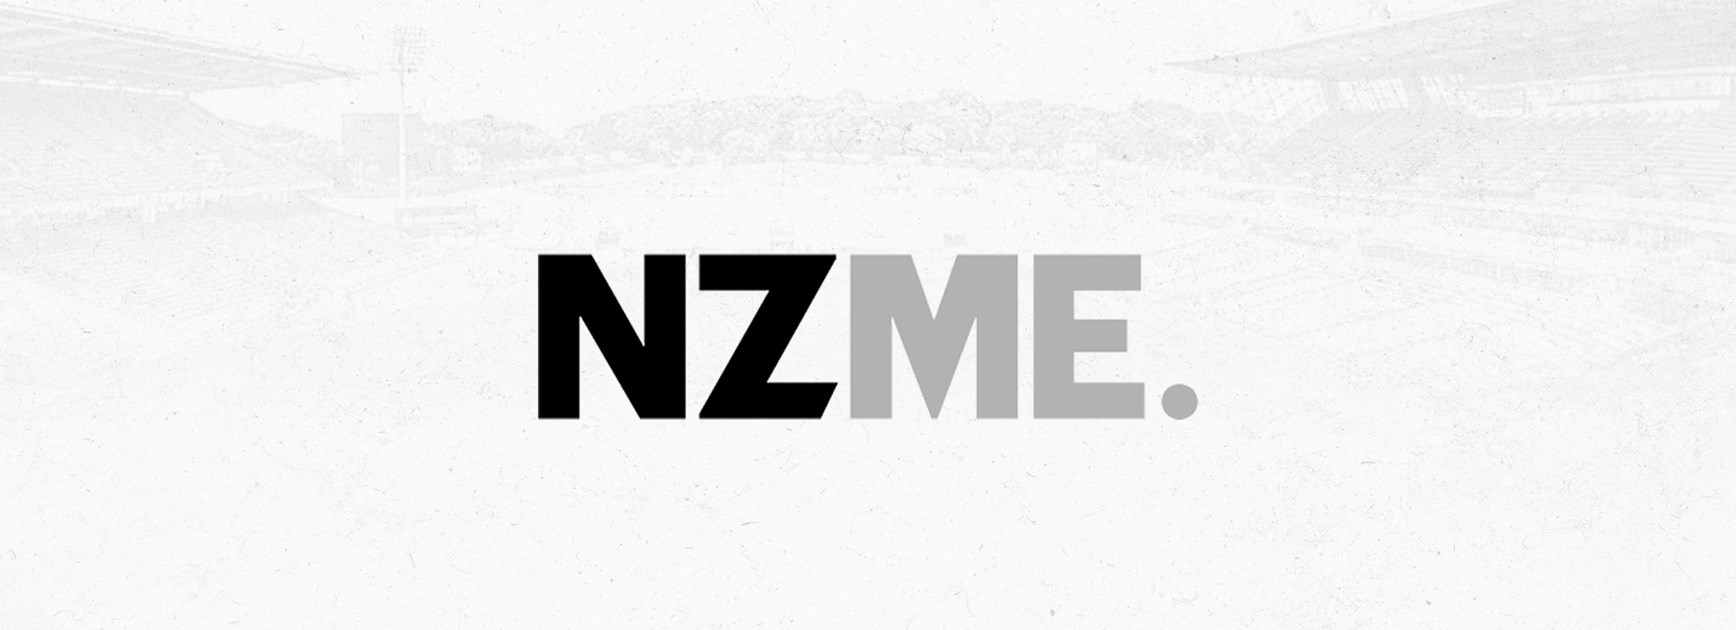 NZME renews partnership with One New Zealand Warriors